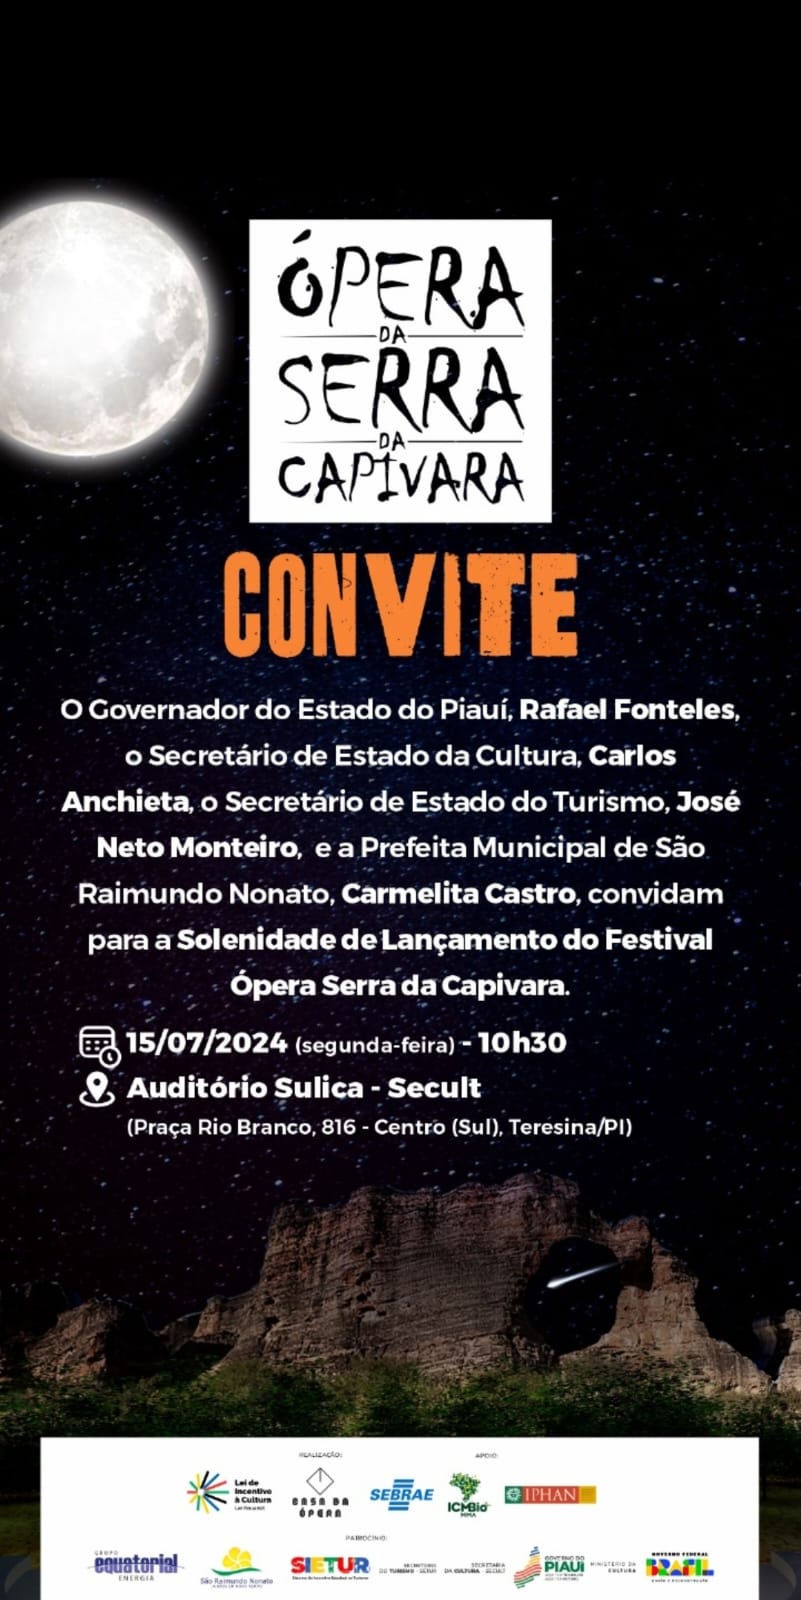 6ª edição do festival Ópera da Serra da Capivara